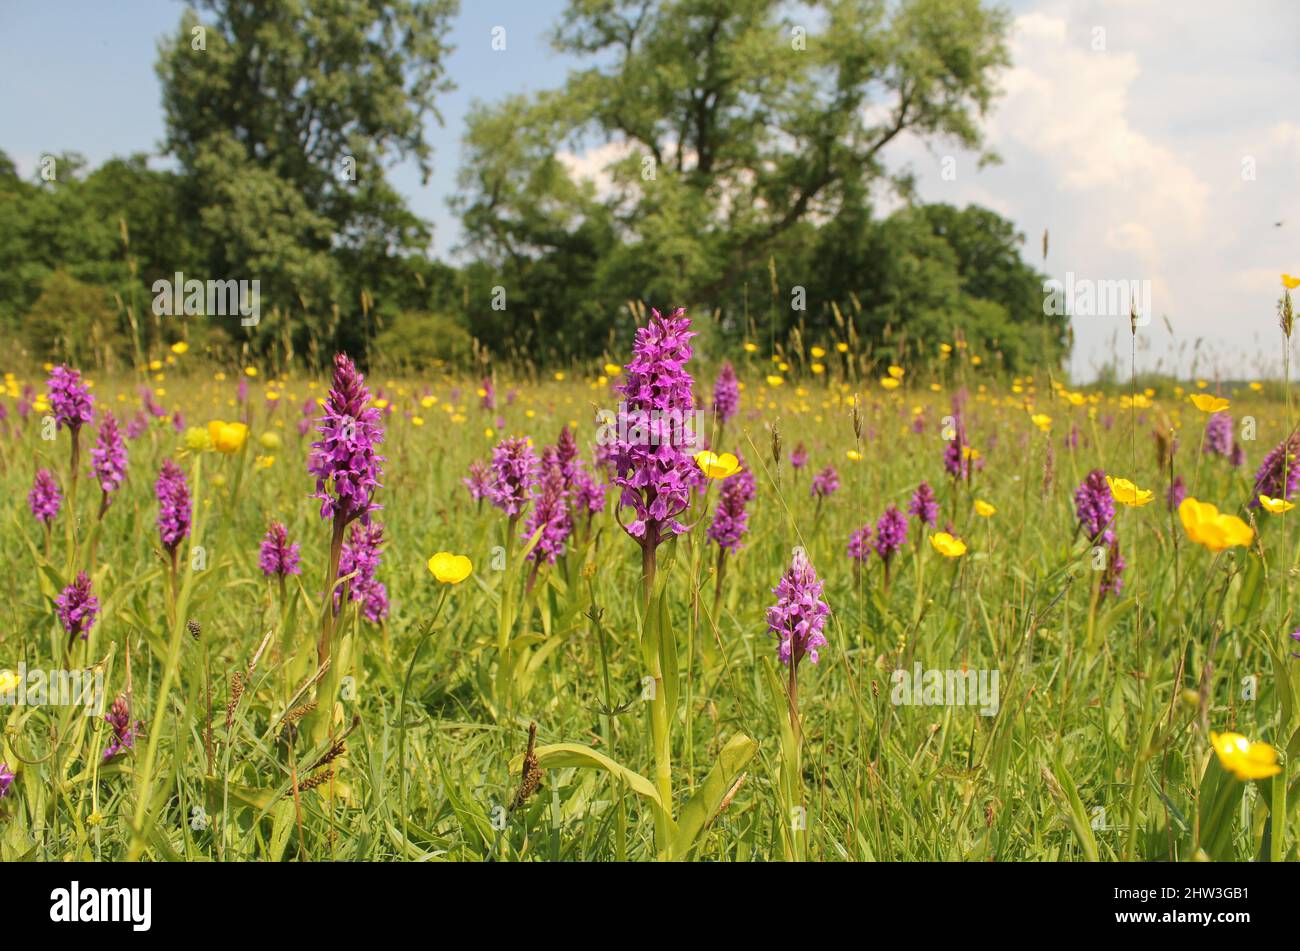 Eine wunderschöne Naturlandschaft mit violetten wilden Orchideen und gelben Butterblumen auf einer feuchten Wiese mit Bäumen in der niederländischen Landschaft im Frühling Stockfoto